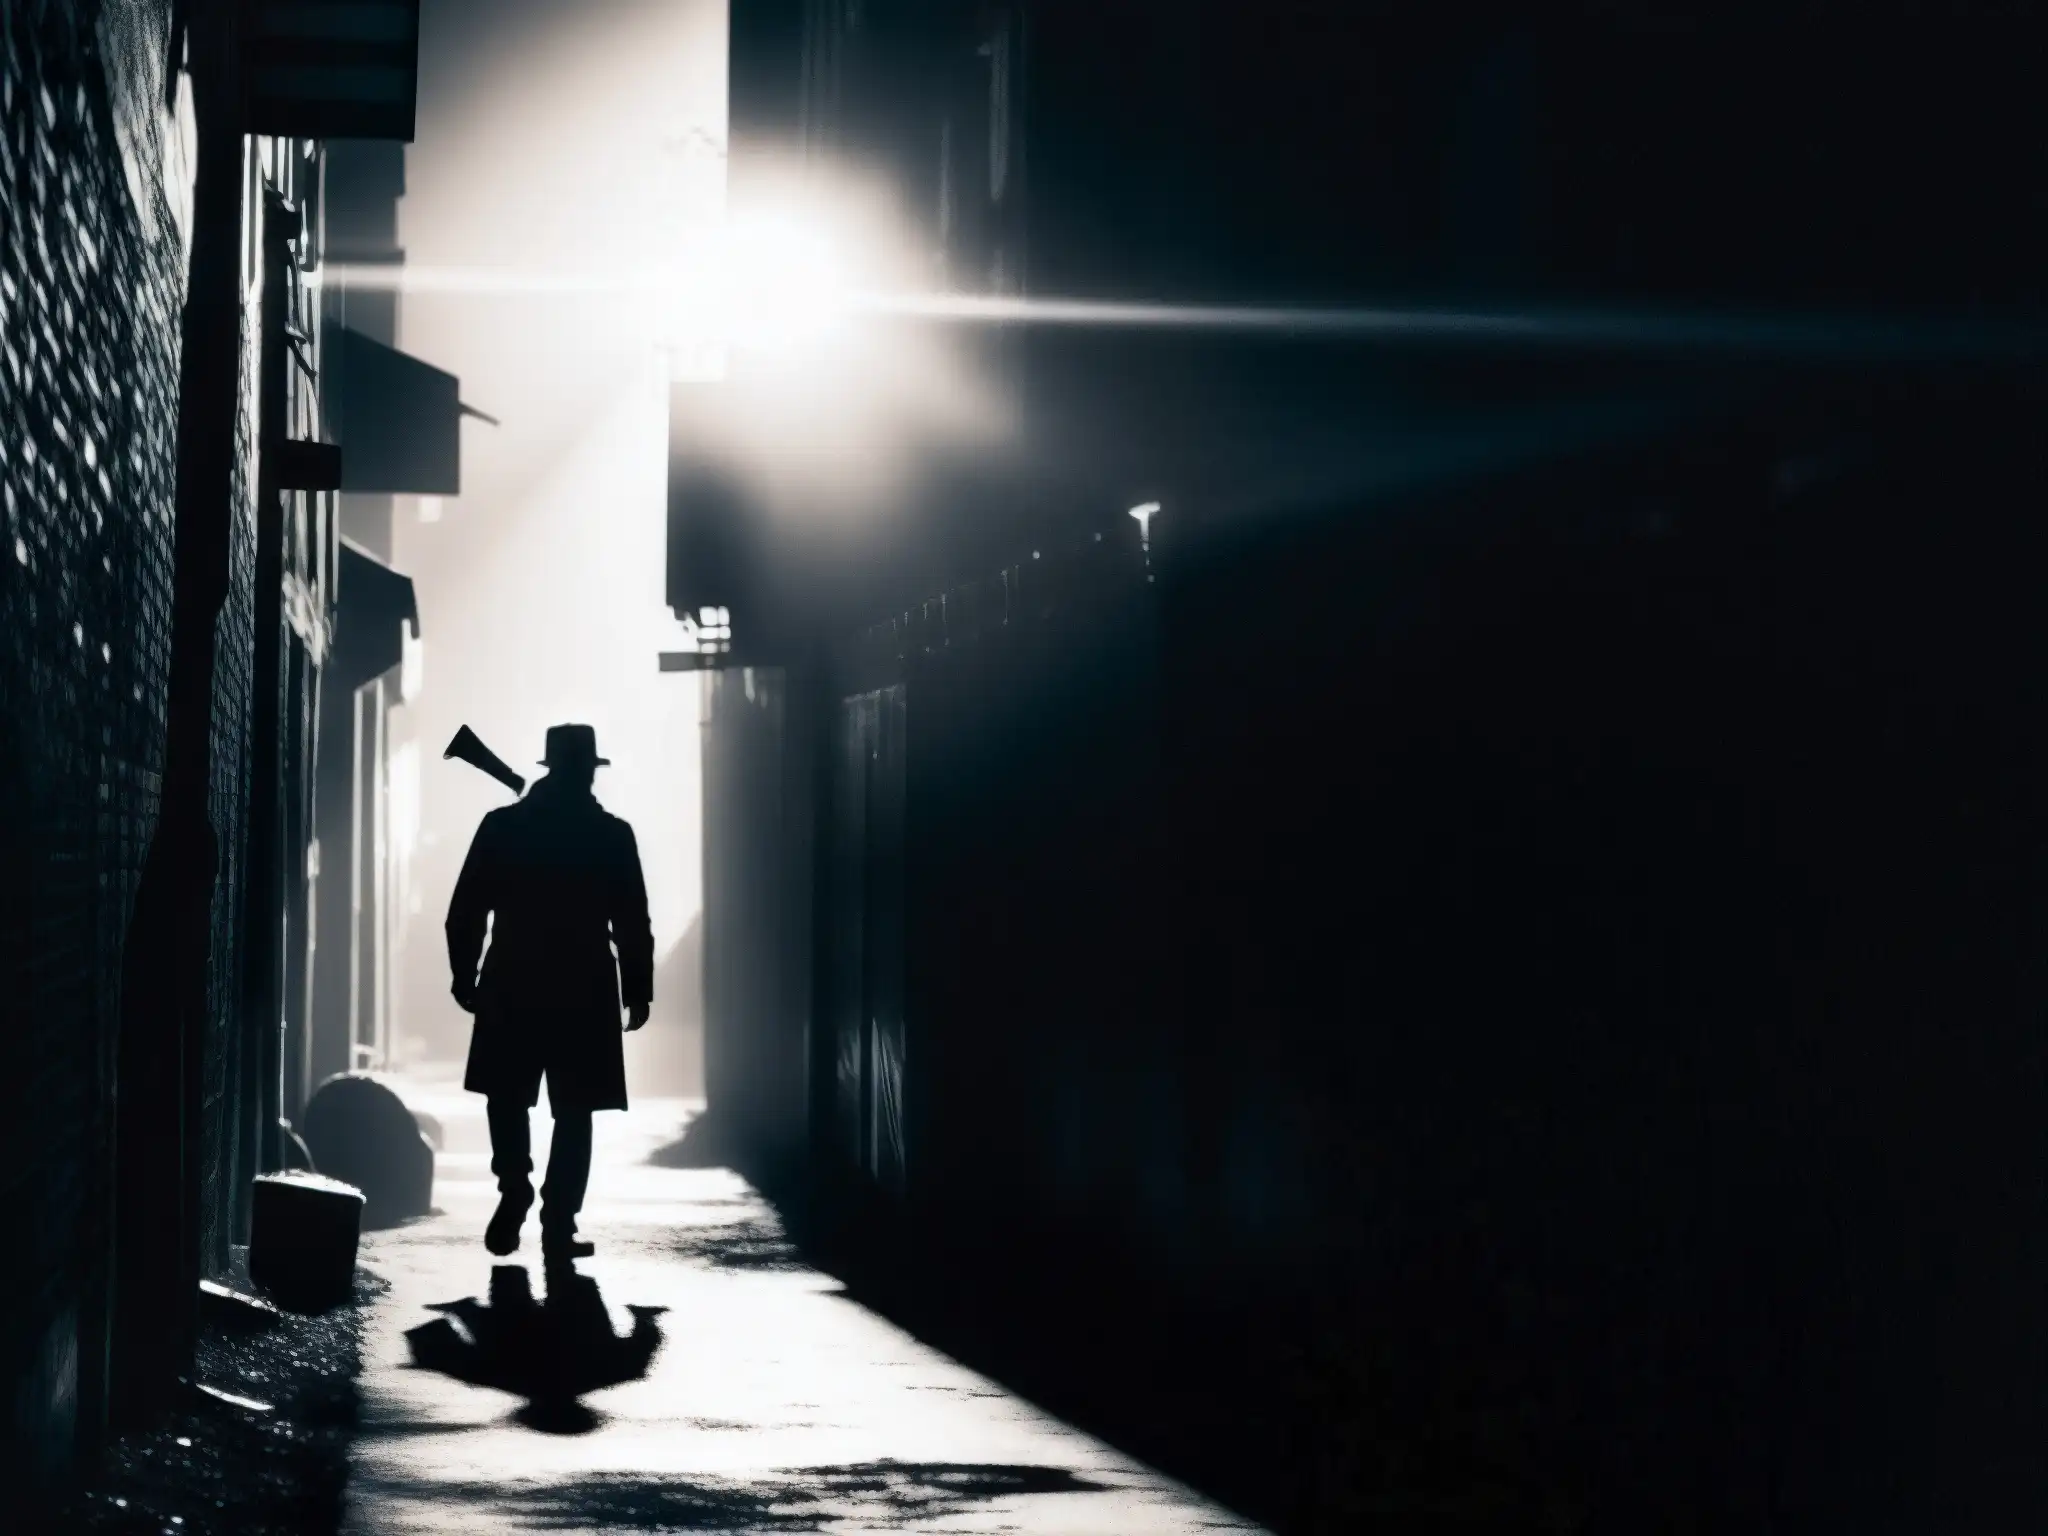 Una atmósfera de misterio y temor en un callejón oscuro, con una figura amenazante sosteniendo un hacha